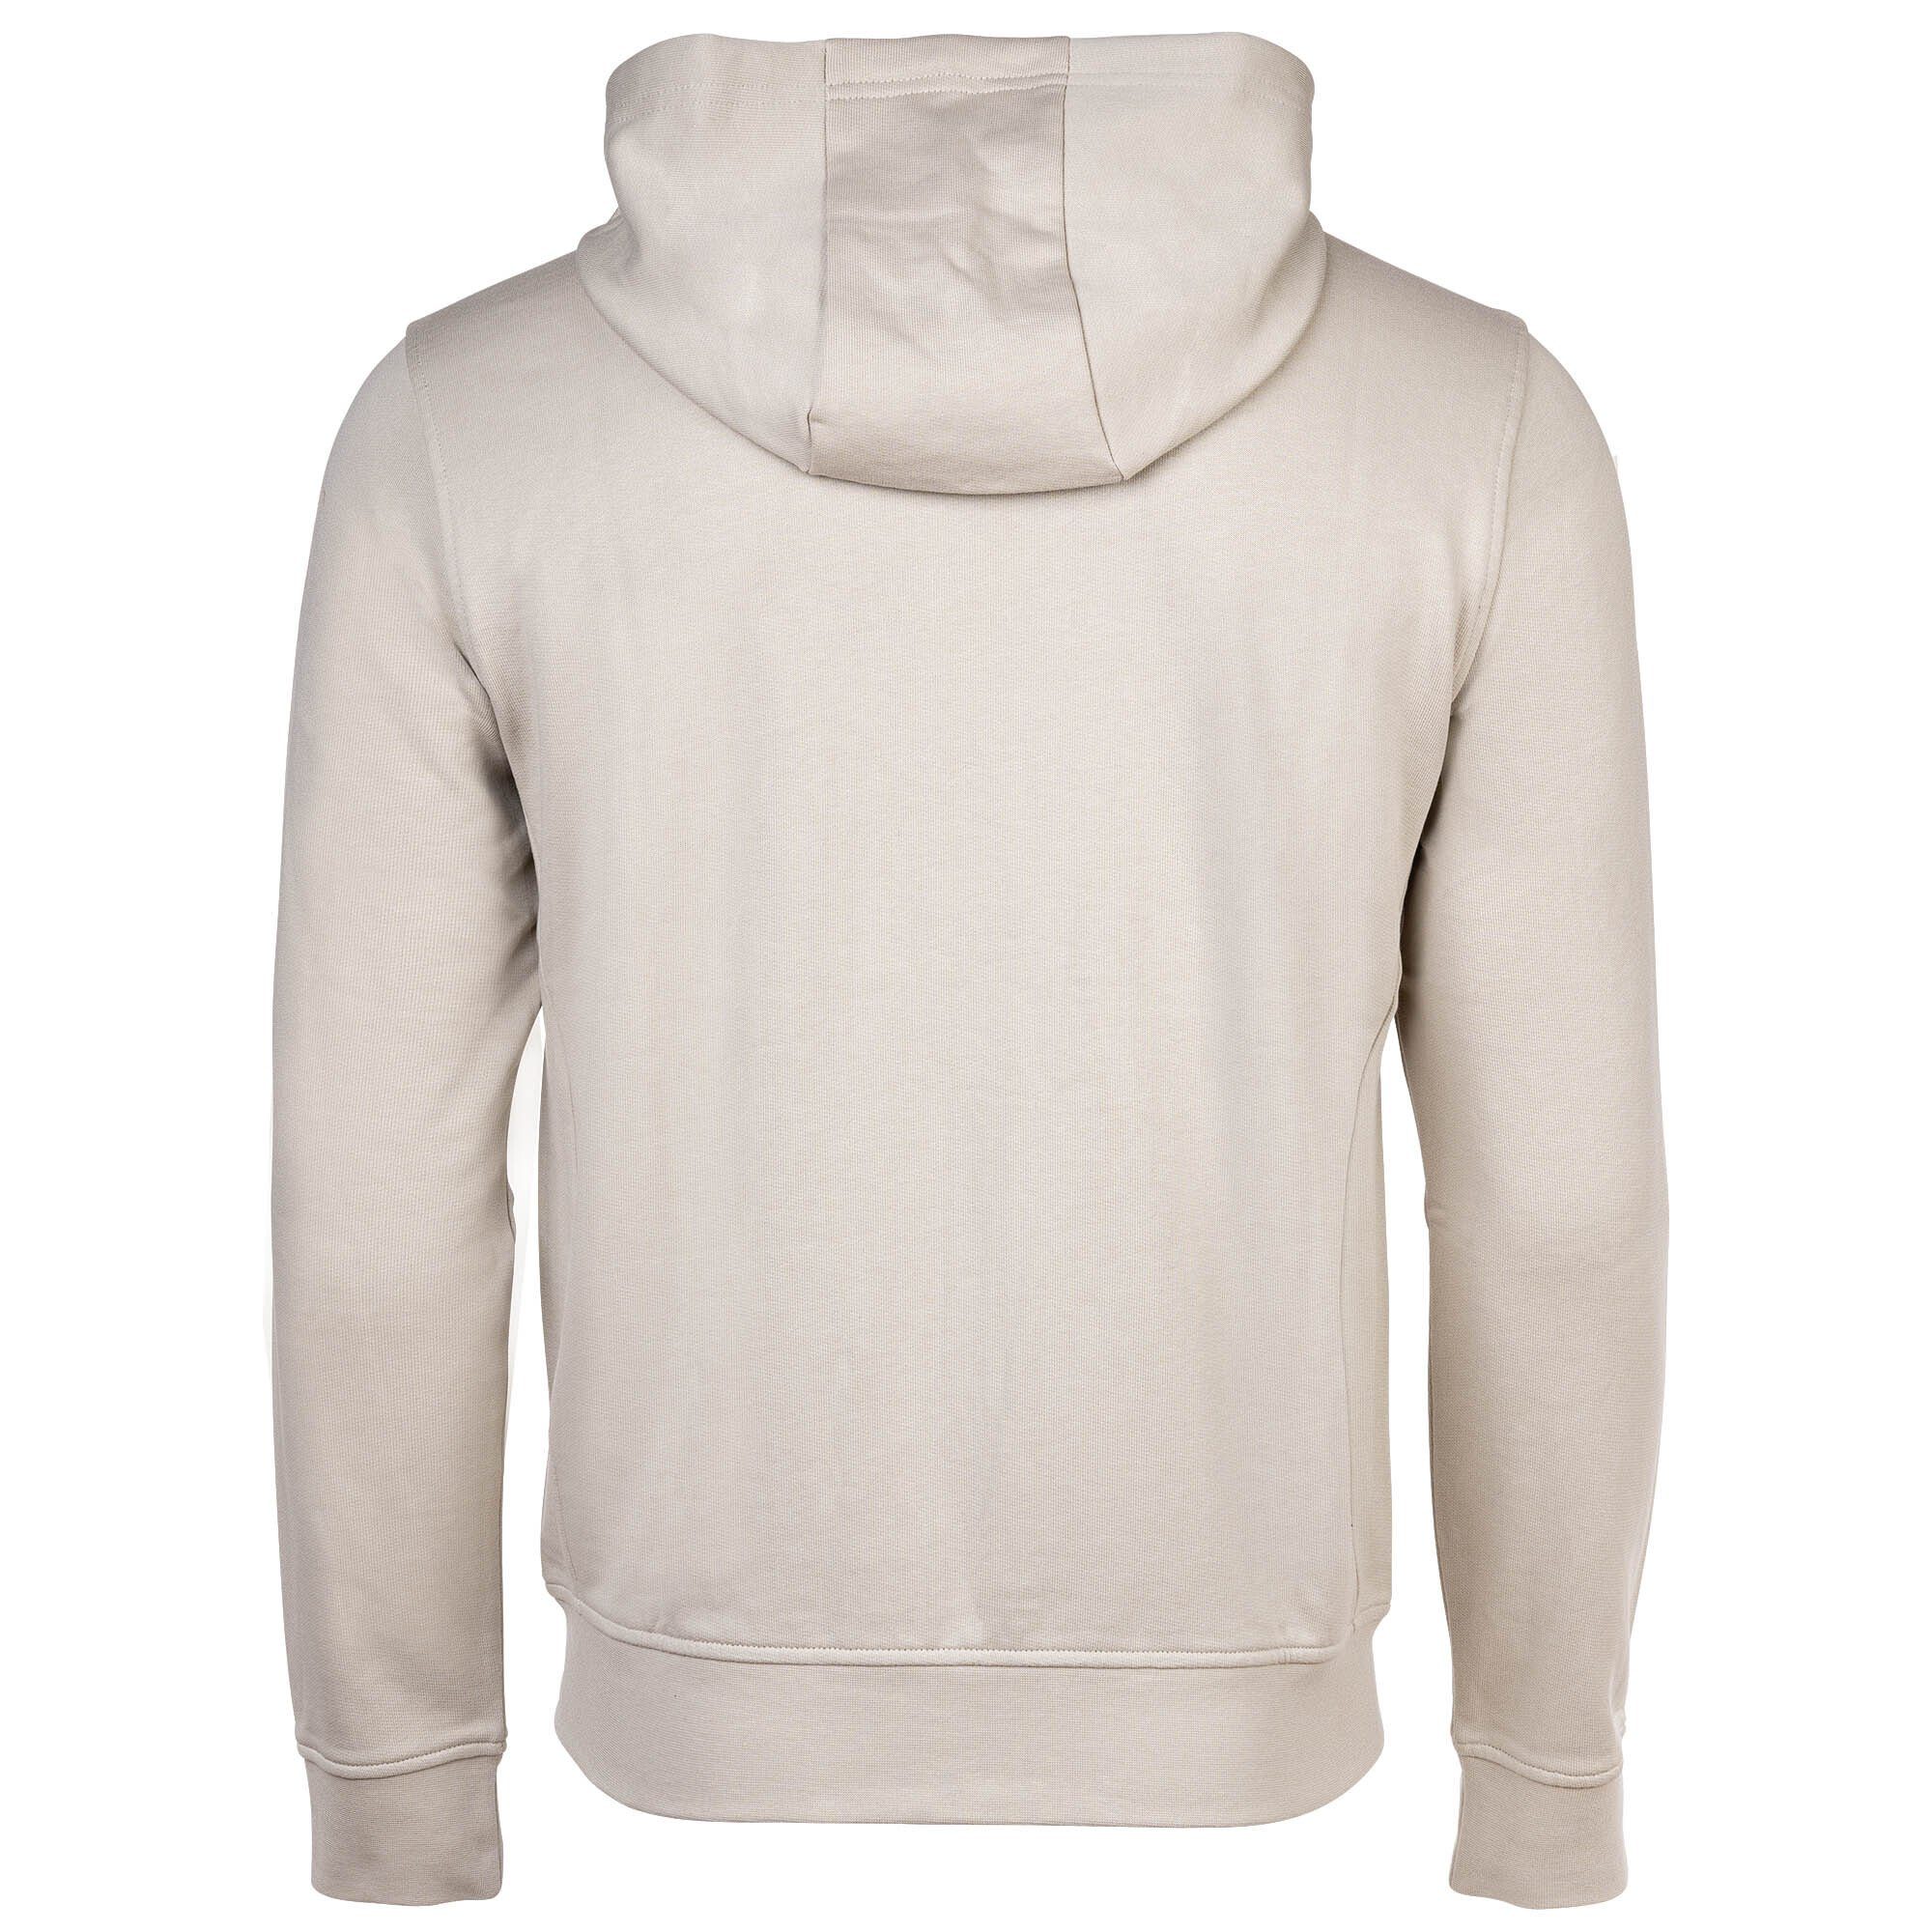 ARMANI EXCHANGE Sweatshirt Herren Sweatshirt Creme Sweatshirtjacke, Logo 